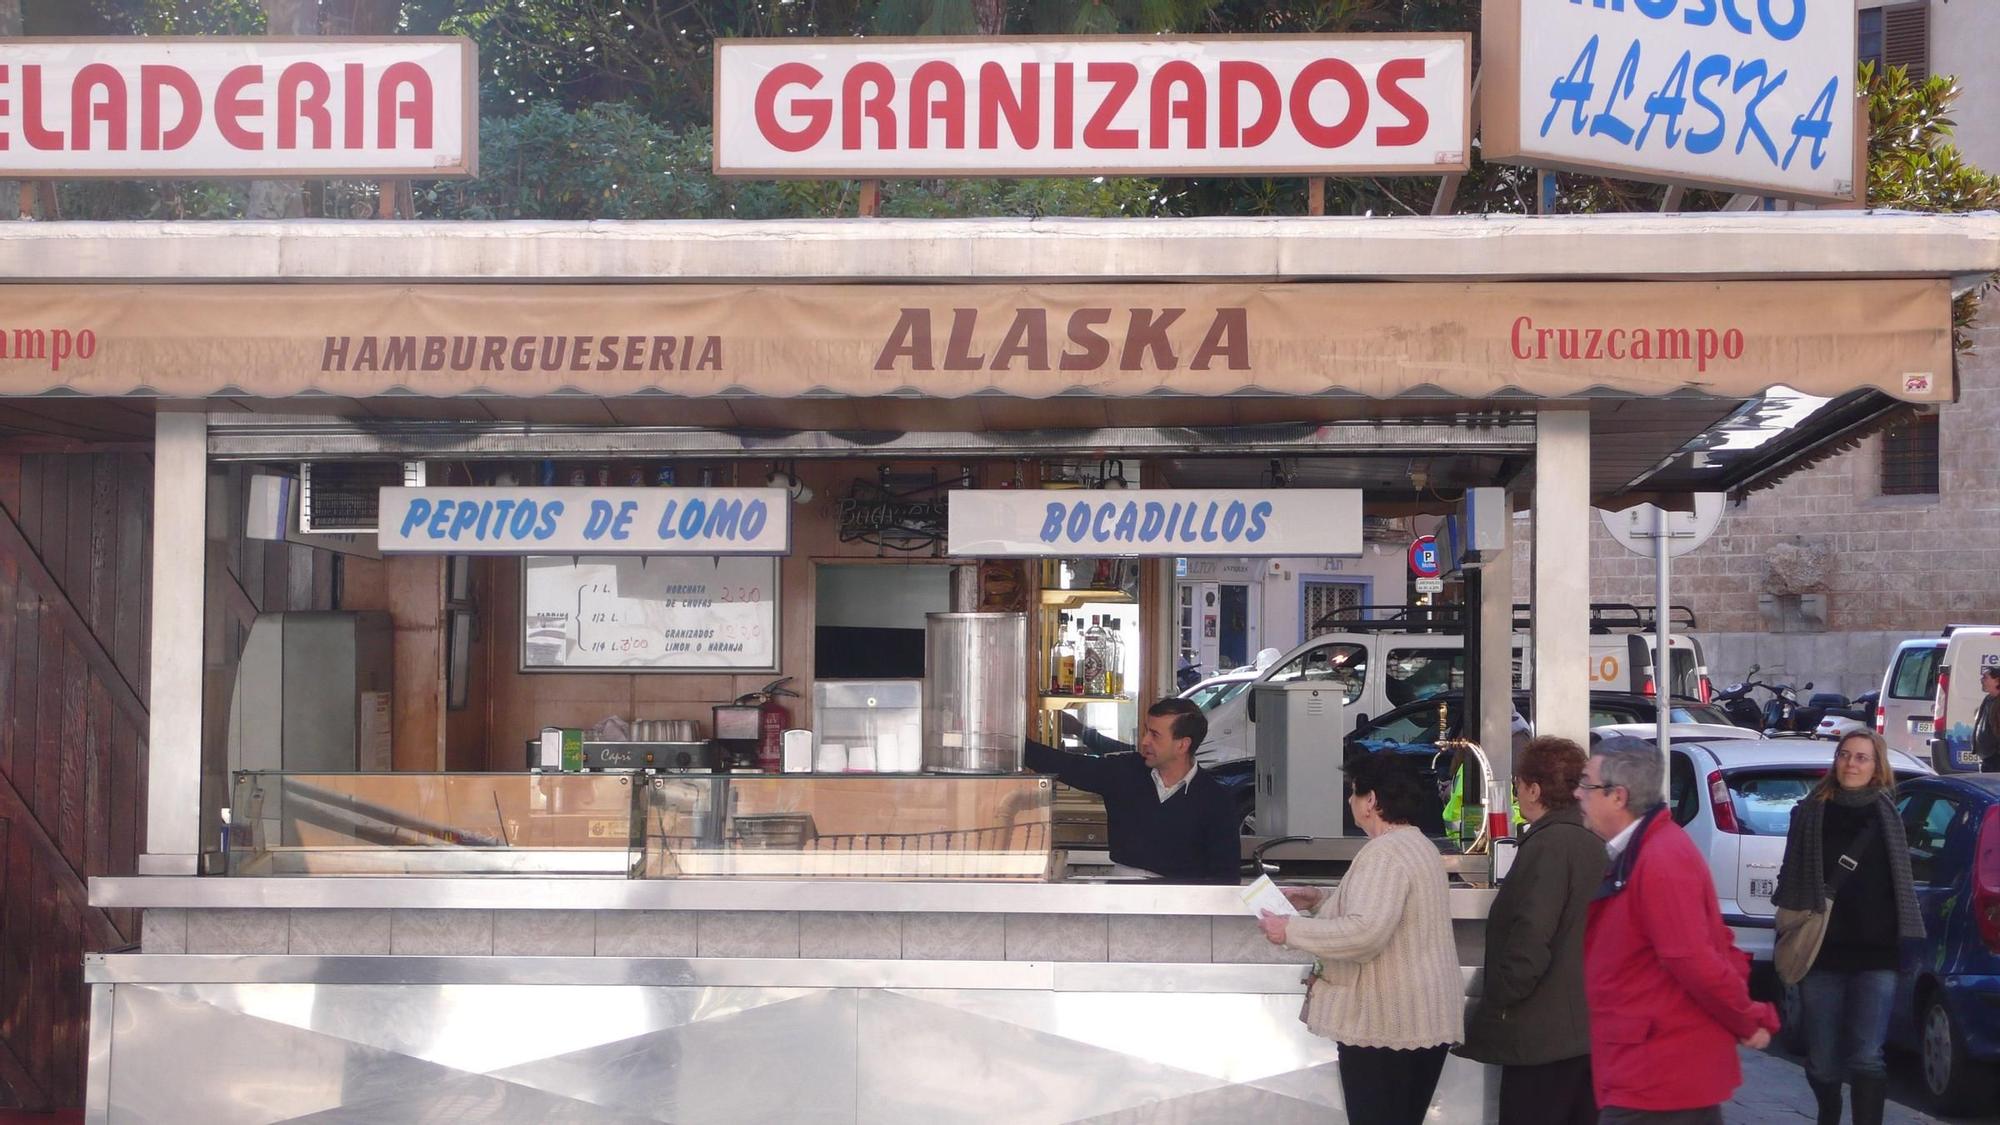 Las fotos del histórico Bar Alaska de Palma, cuyo futuro depende de la reforma de la Plaza del Mercat